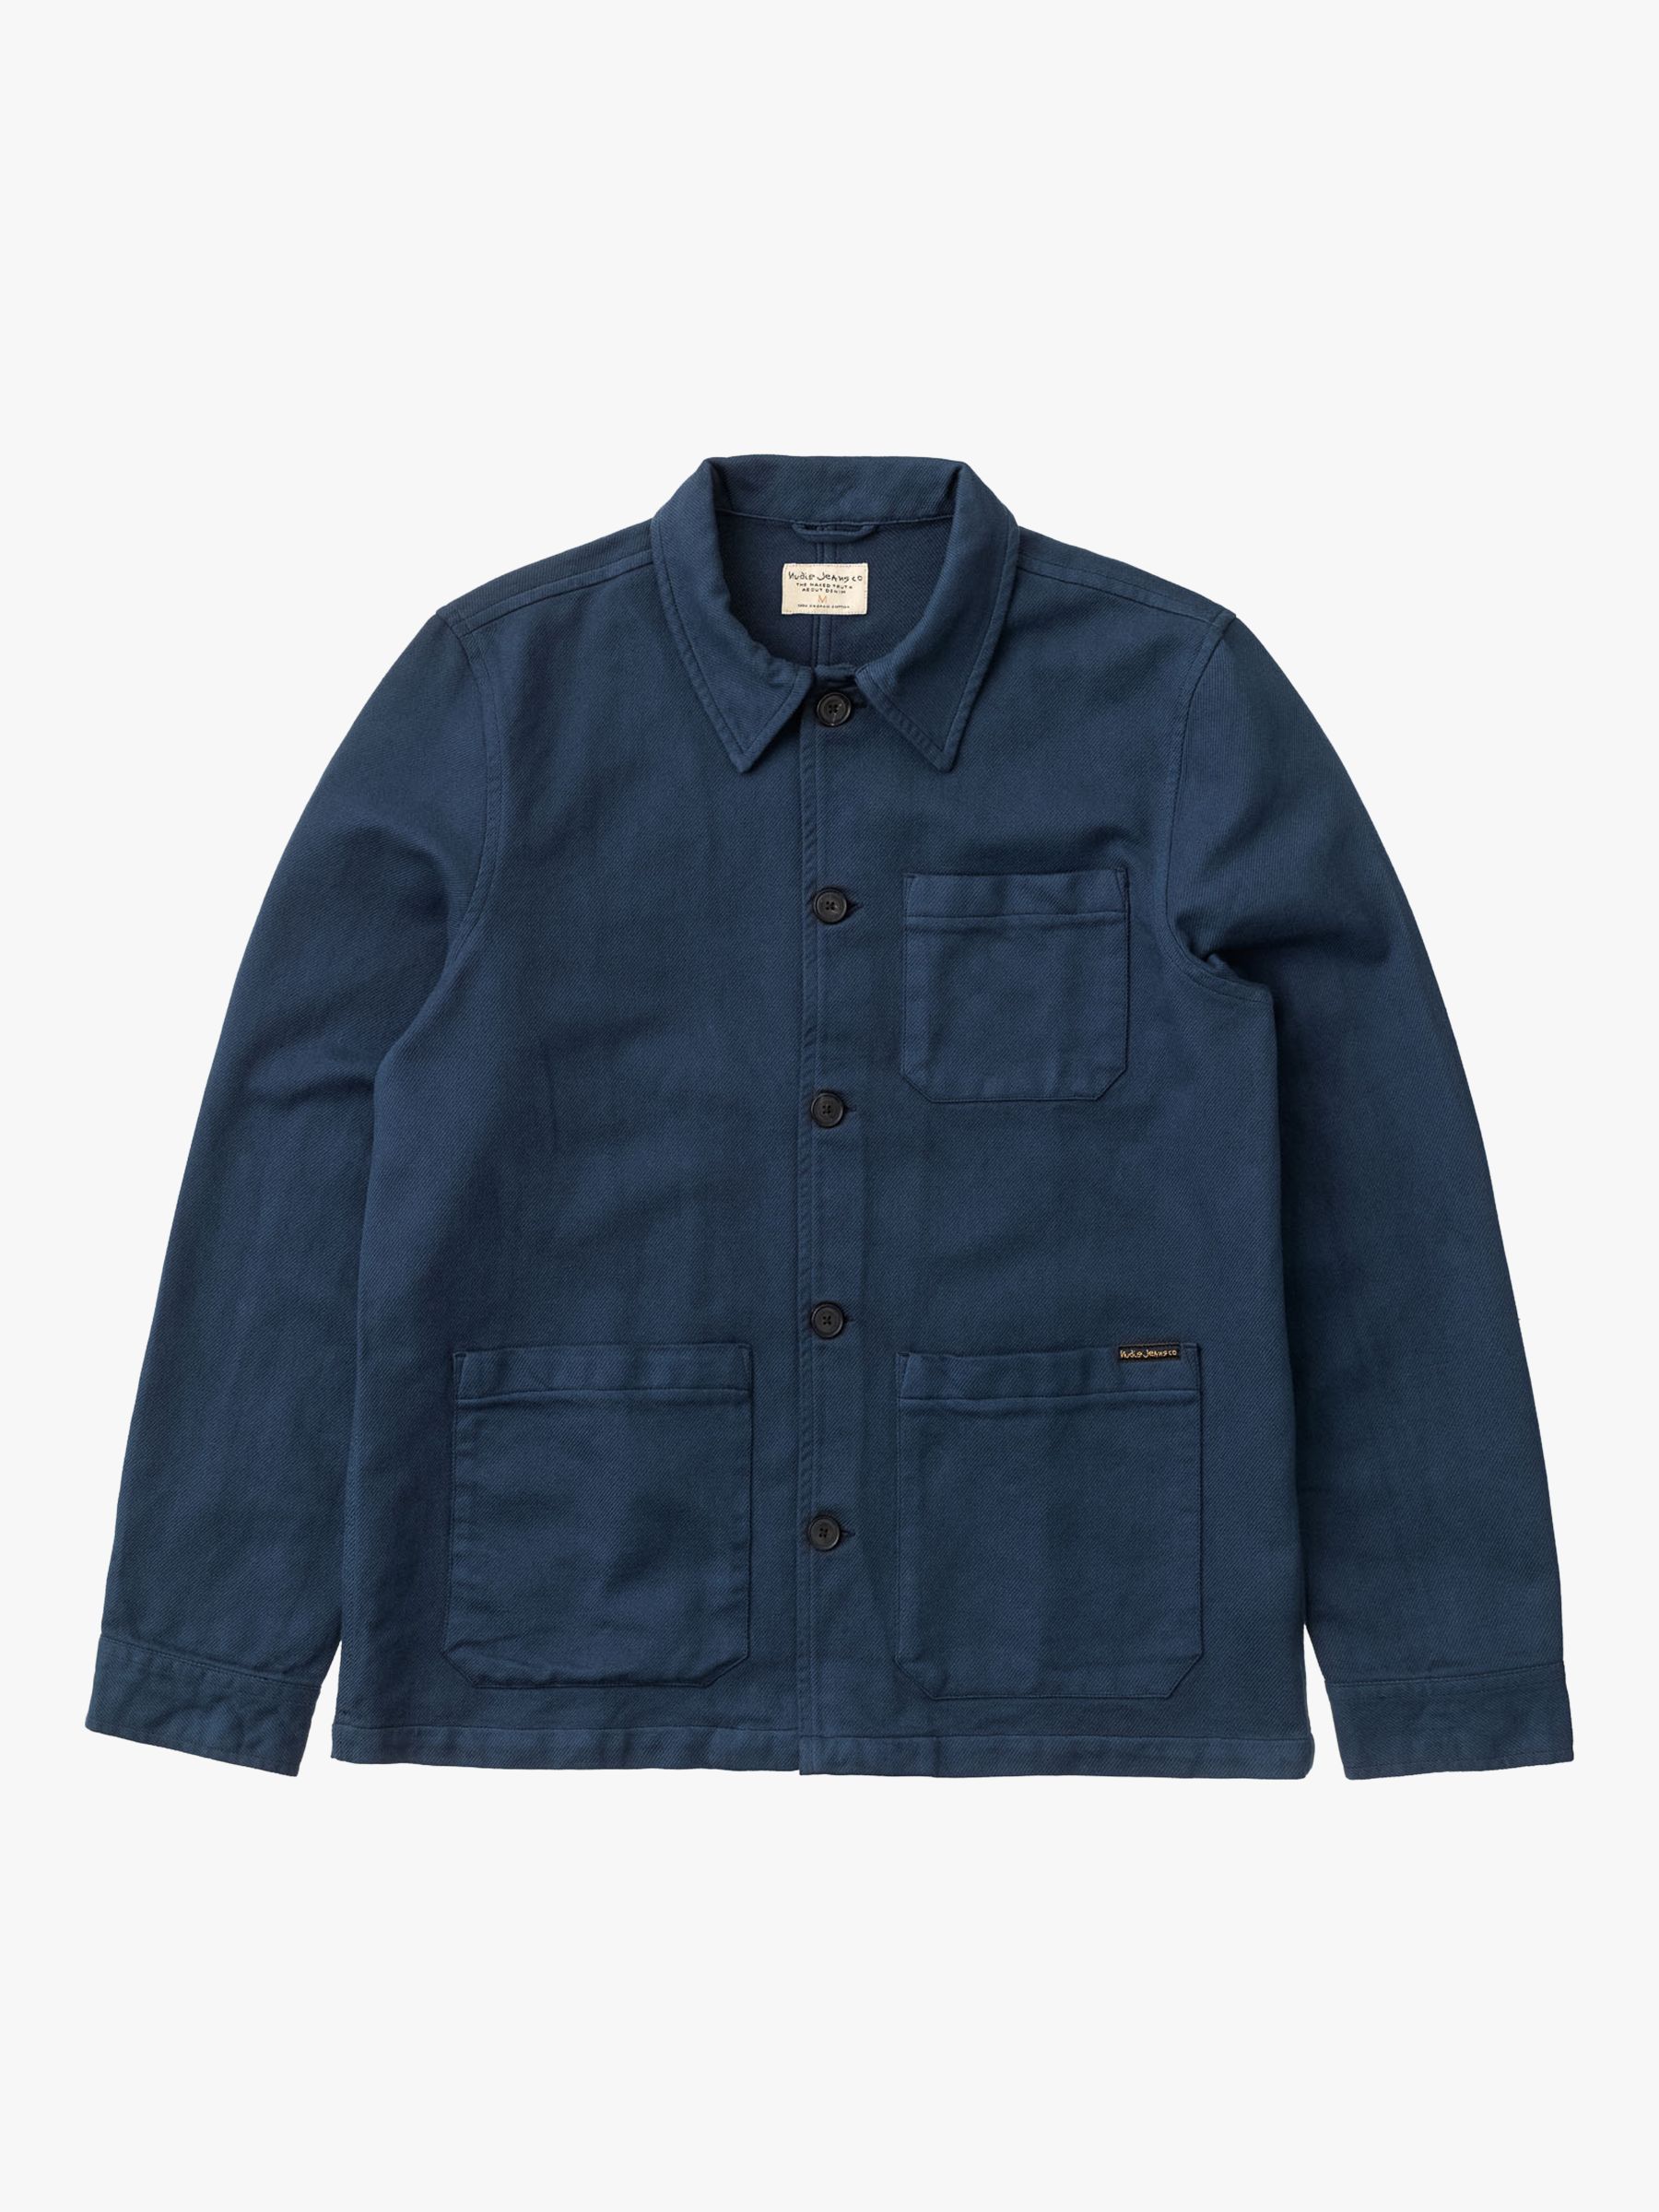 Nudie Jeans Barney Worker Jacket, Denim Blue at John Lewis & Partners